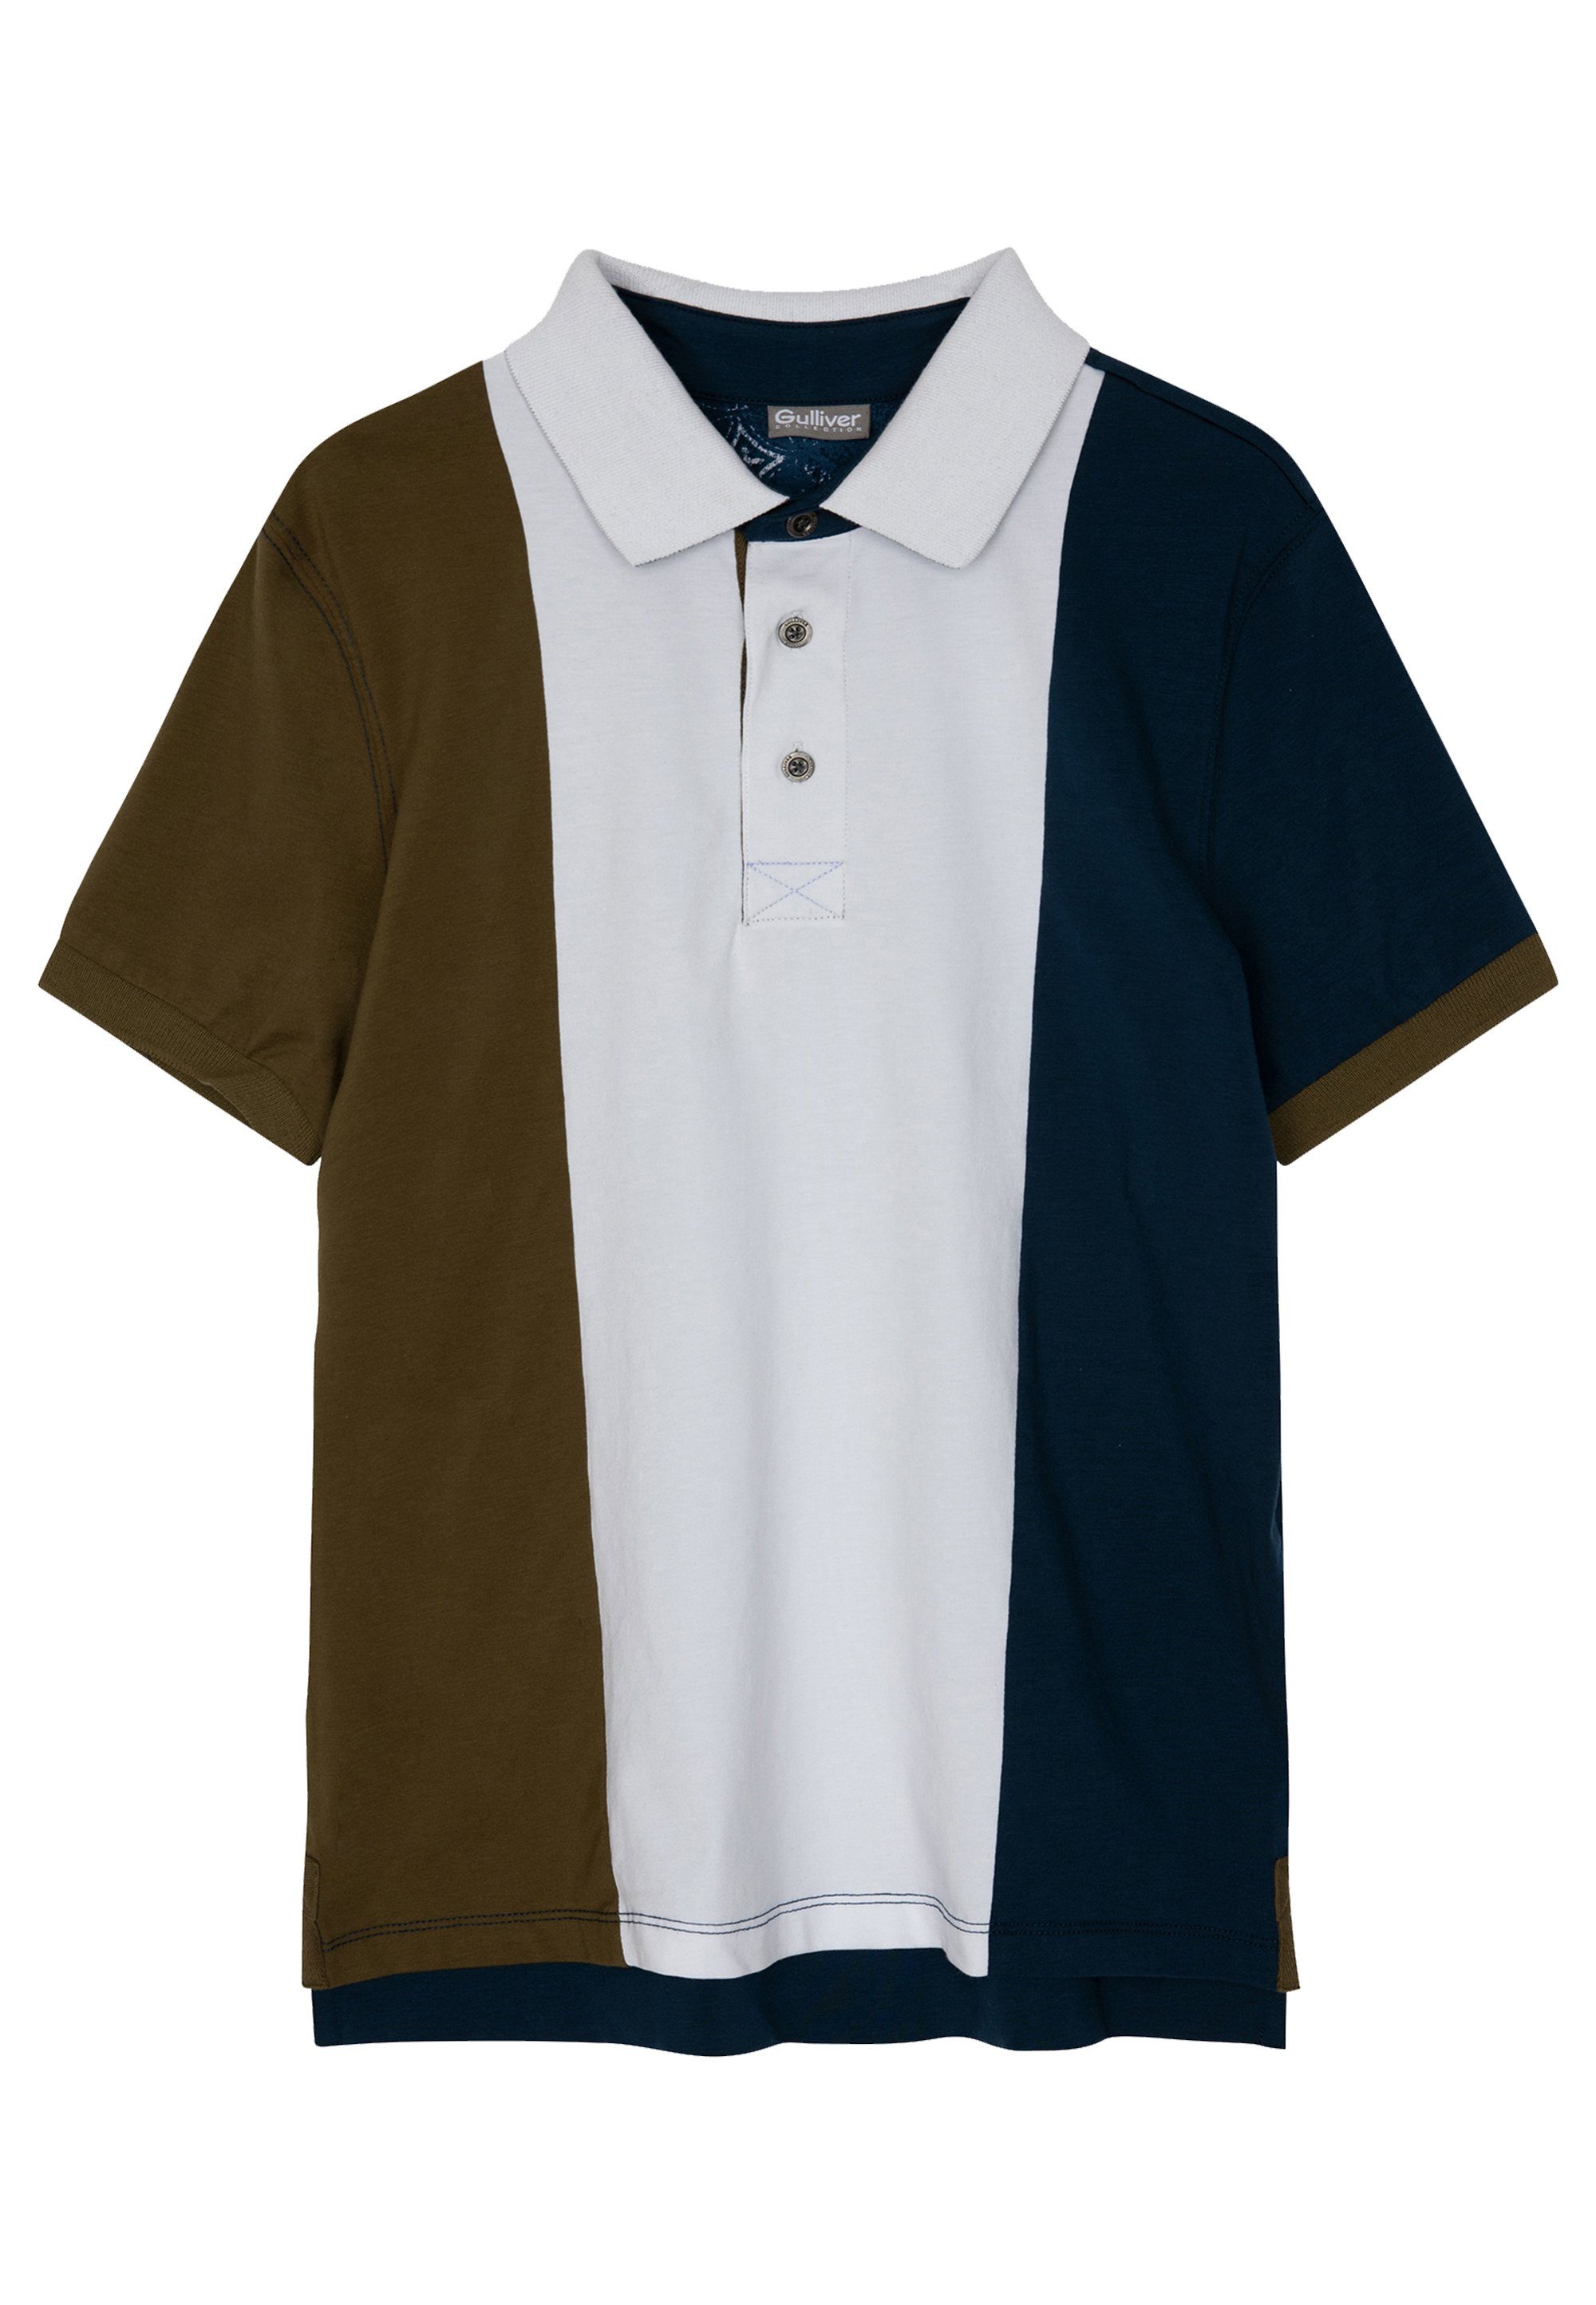 echter Color-Blocking-Print, lässigem ein Poloshirt trendigem mit Gulliver Dank Colour-Blocking-Design Hingucker